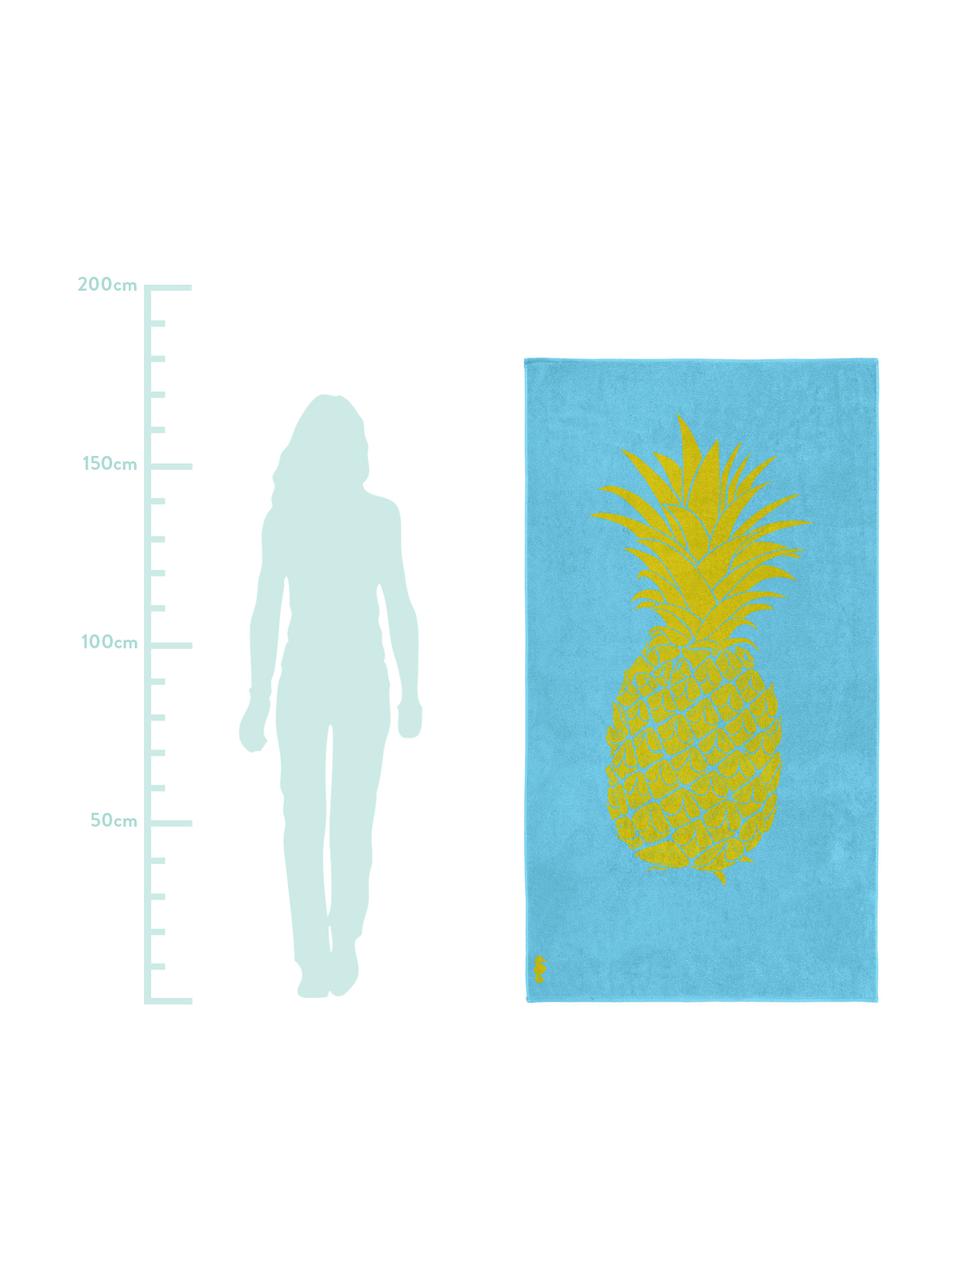 Strandtuch Ananas, 100% Velours (Baumwolle)
mittelschwere Stoffqualität, 420 g/m², Hellblau, Gelb, 100 x 180 cm